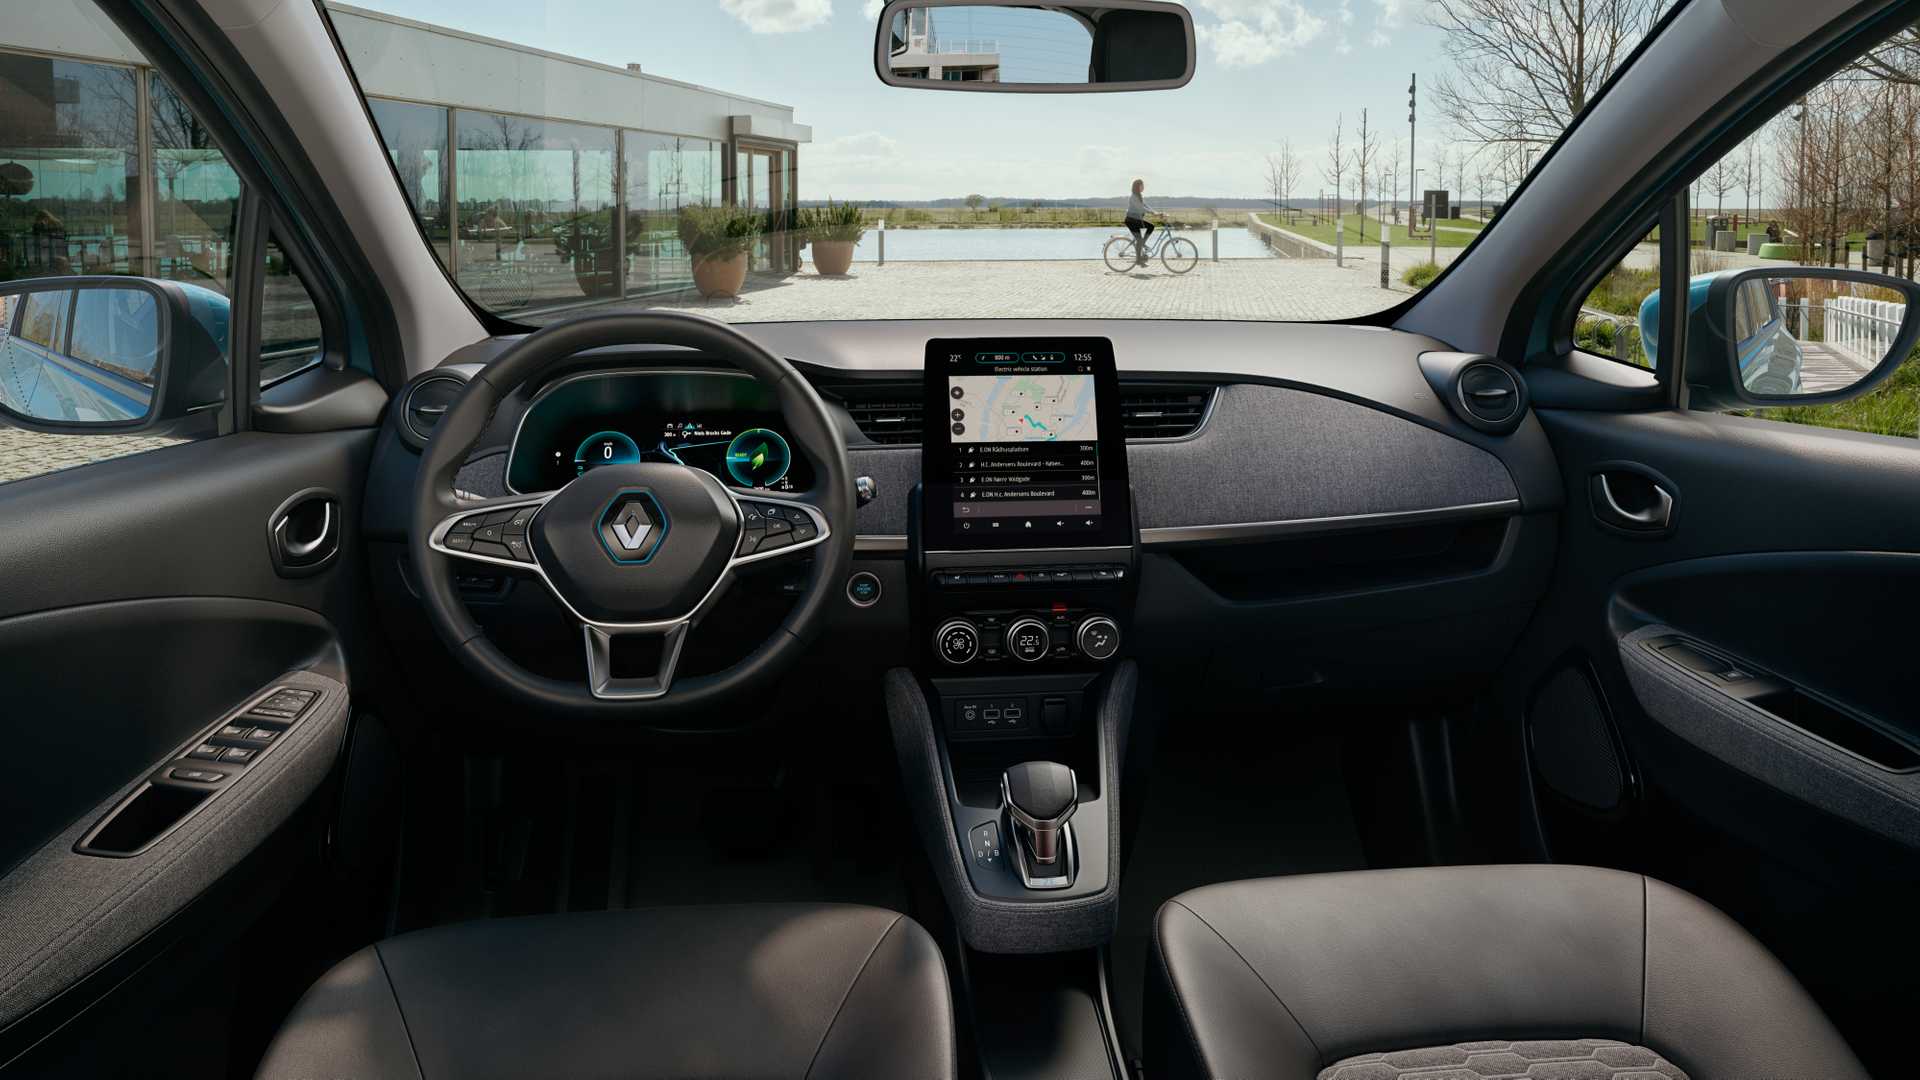 Представлен электромобиль Renault Zoe нового поколения